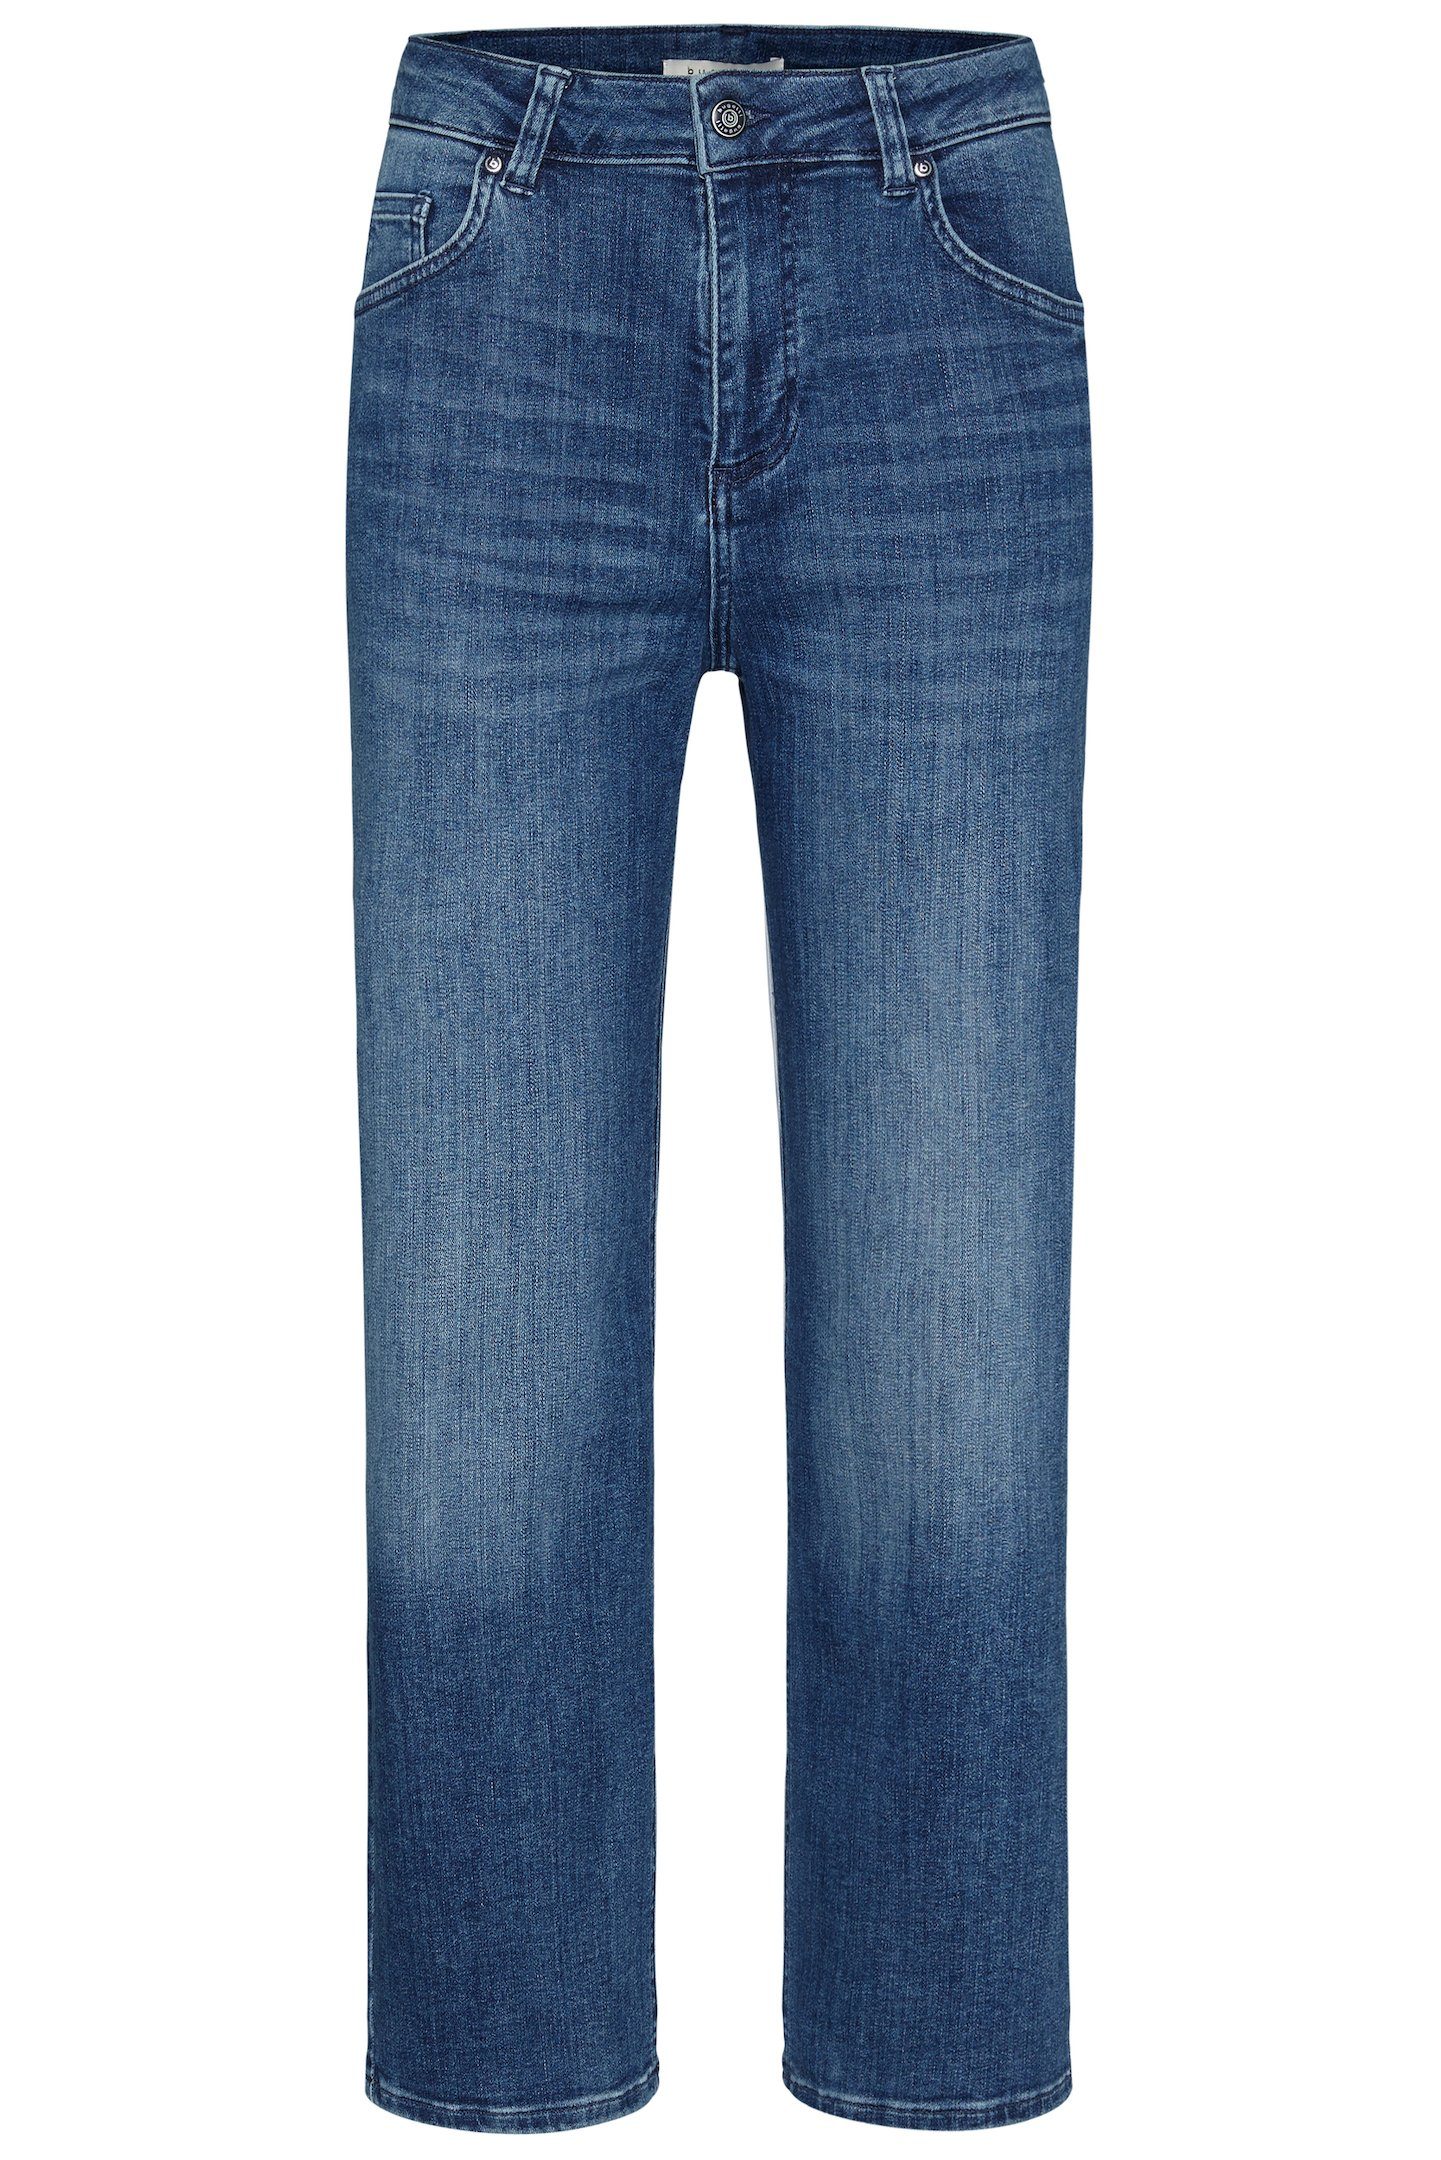 bugatti aus Fit Relax 5-Pocket-Jeans in elastischer Baumwollware